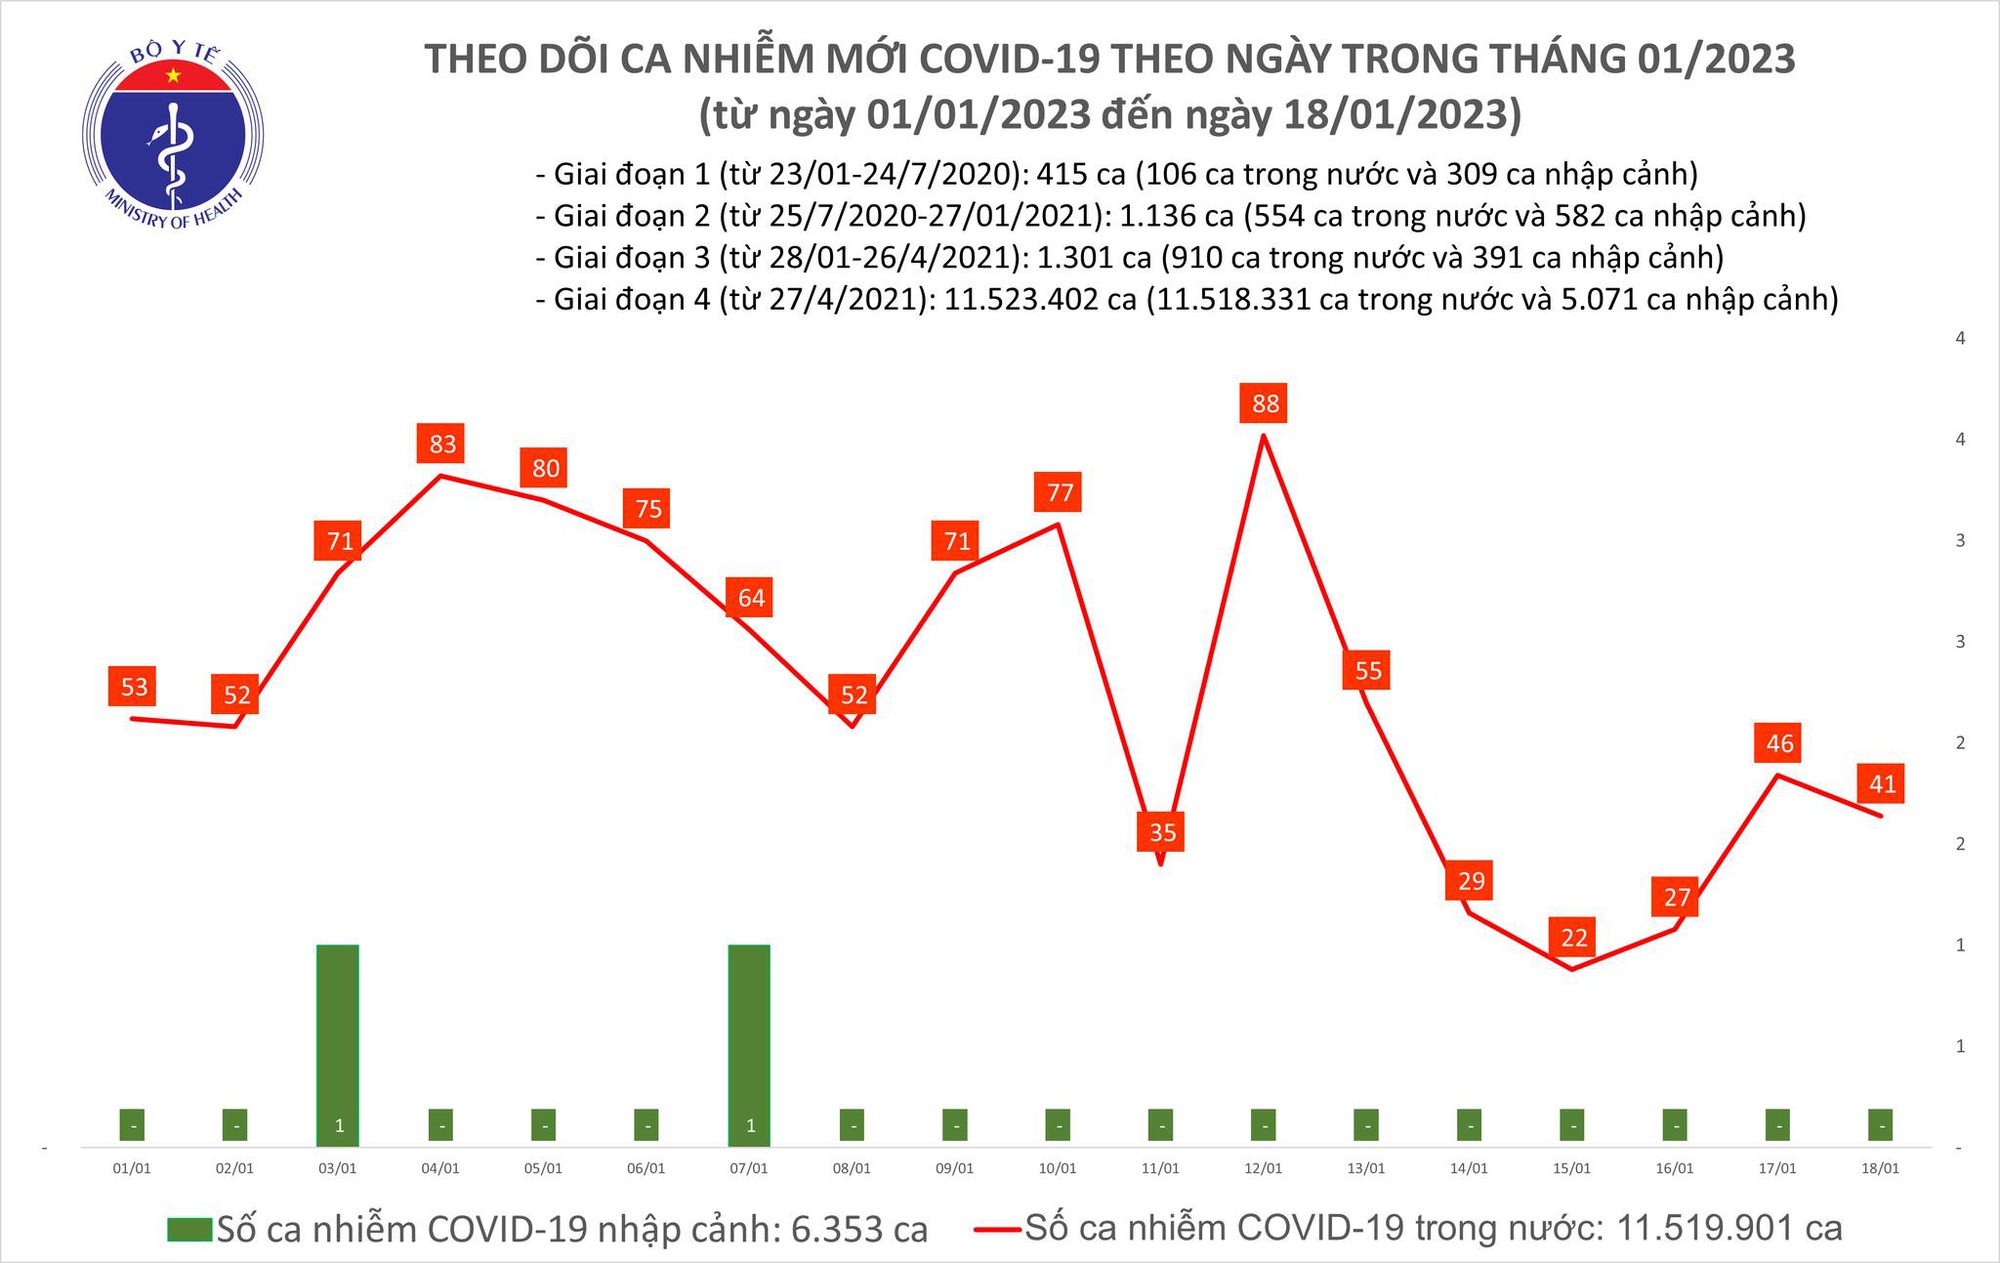 Ngày 18/1: Có 41 ca COVID-19, cả nước chỉ còn 3 bệnh nhân nặng - Ảnh 2.